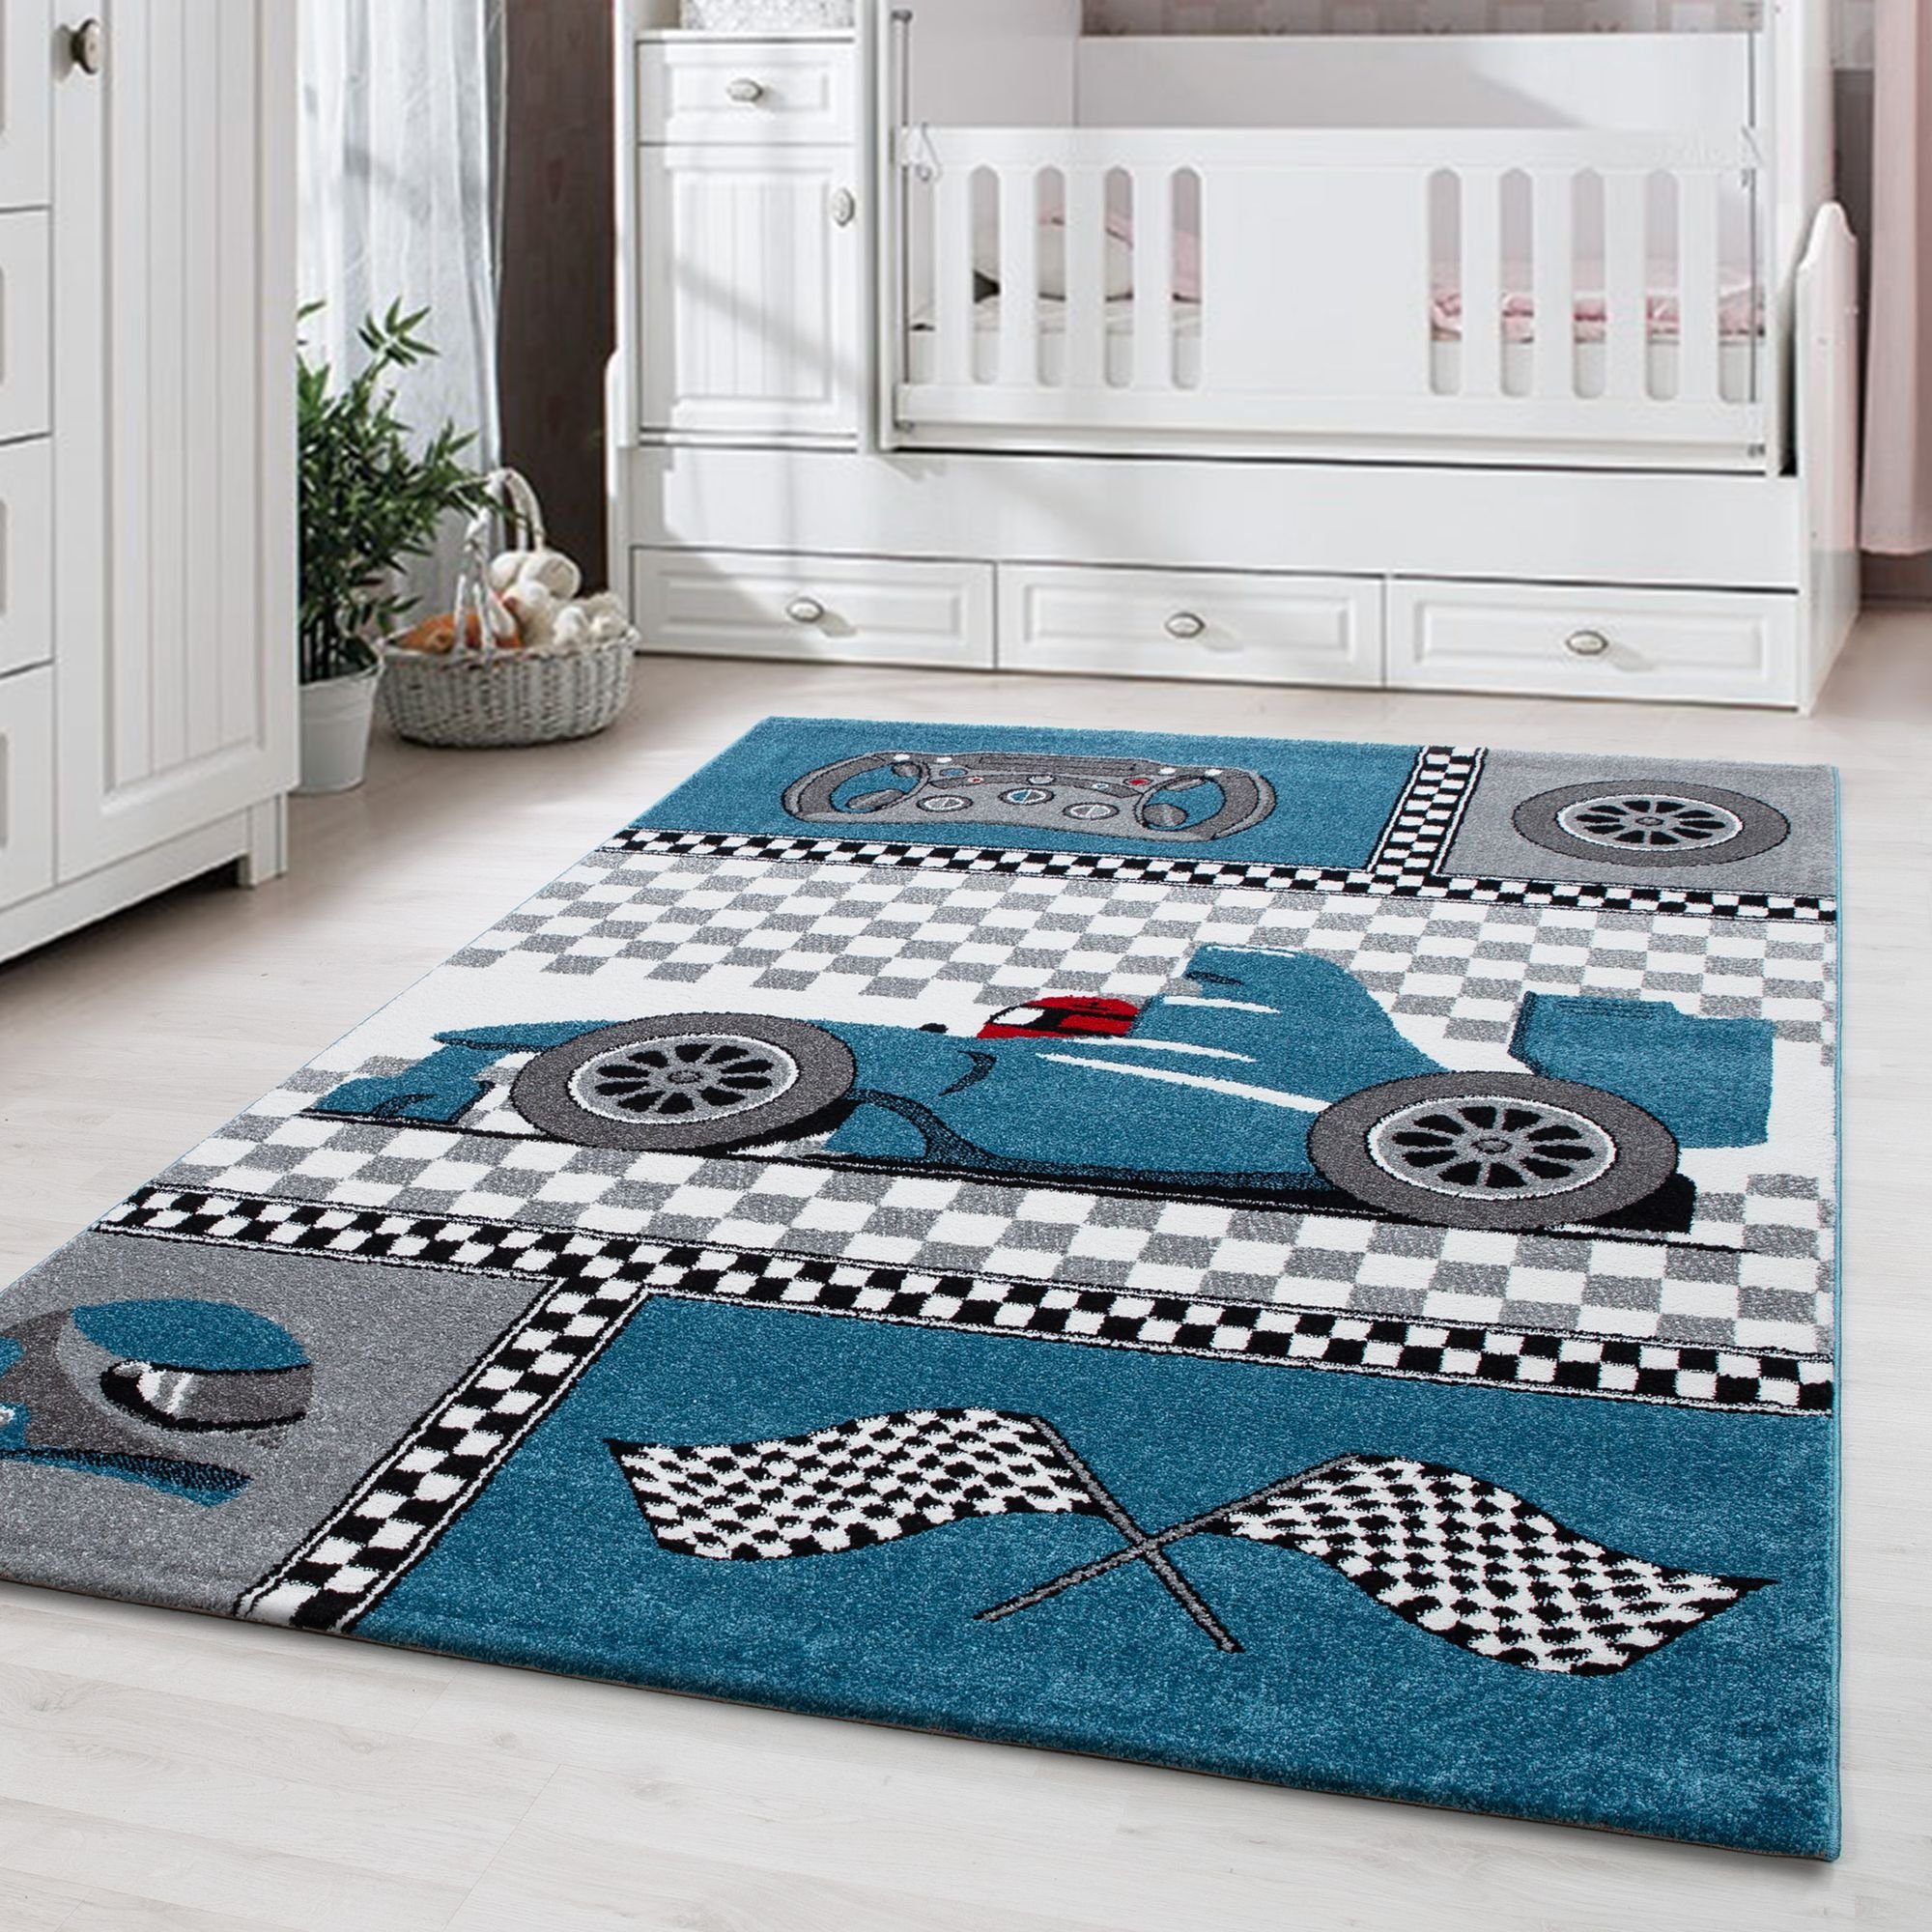 Kinderteppich Rennwagen, Carpetsale24, Rund, Höhe: 11 mm, Kinderteppich Rennwagen Teppich Baby Teppich Kinderzimmer Pflegeleicht